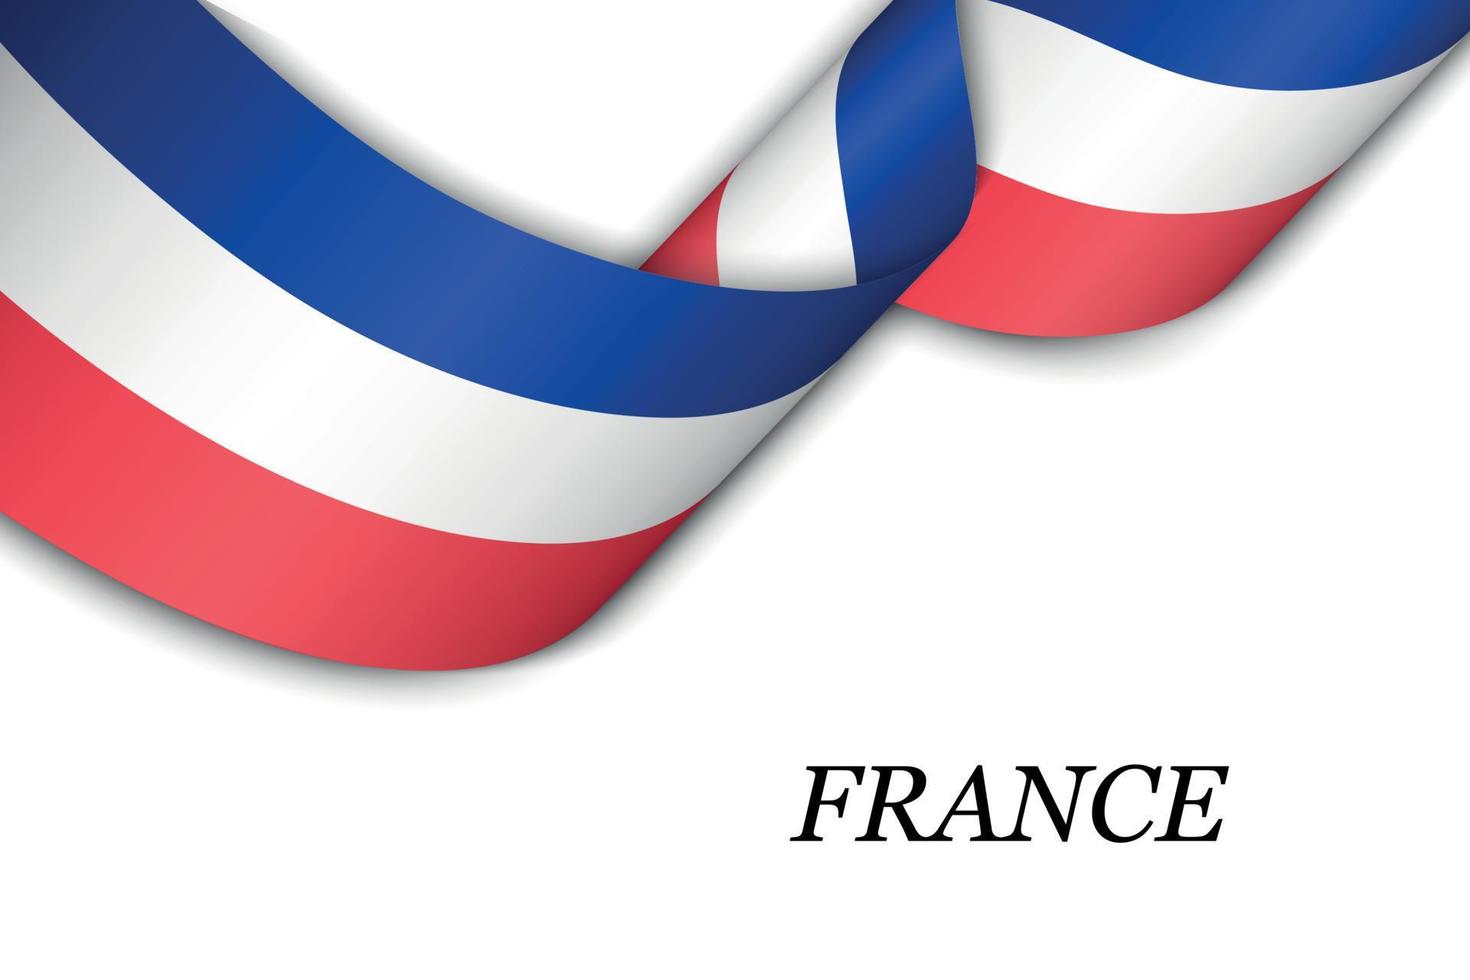 zwaaiend lint of spandoek met vlag van frankrijk vector